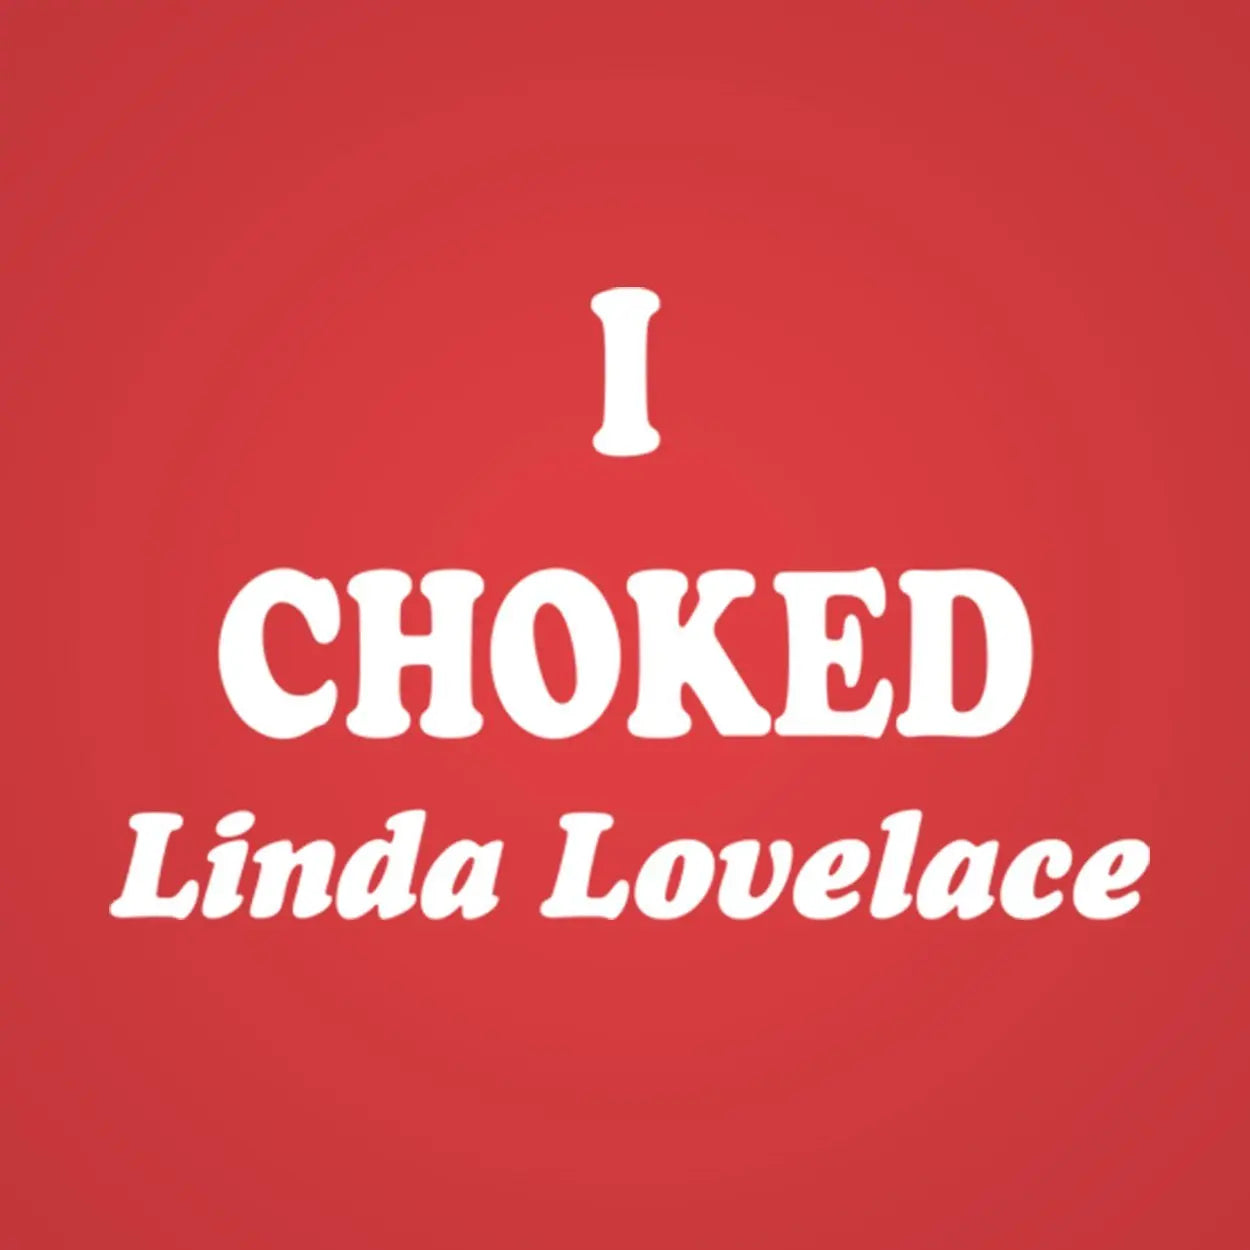 I Choked Linda Lovelace Tshirt - Donkey Tees